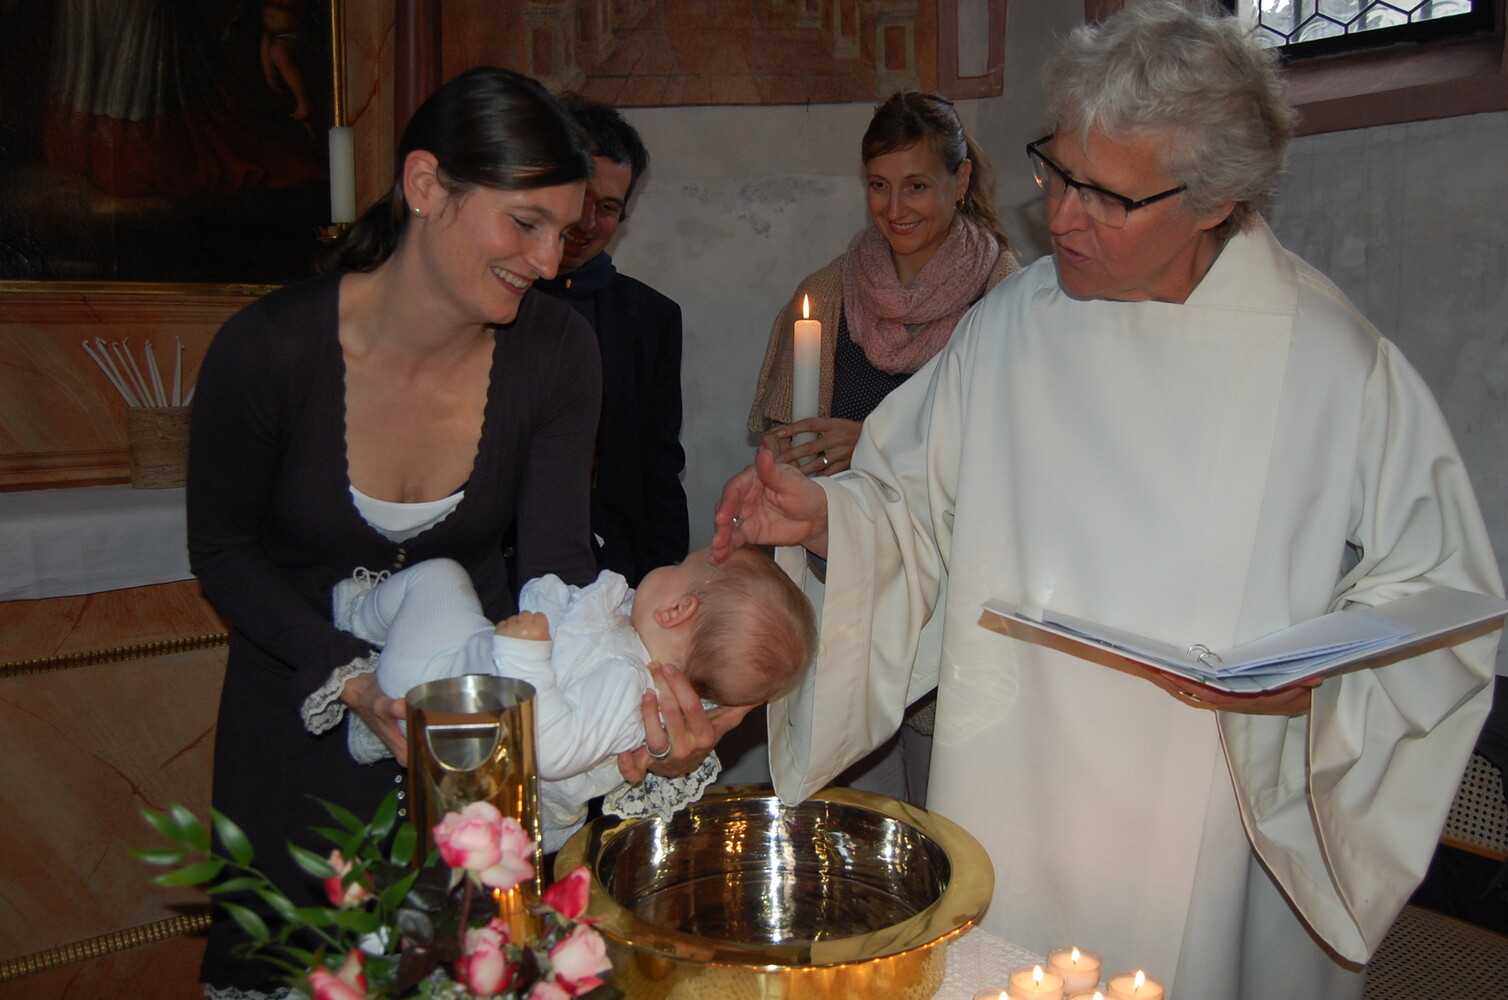 Taufe durch Silvia Huber 2015 in der St. Karli-Kapelle in Luzern